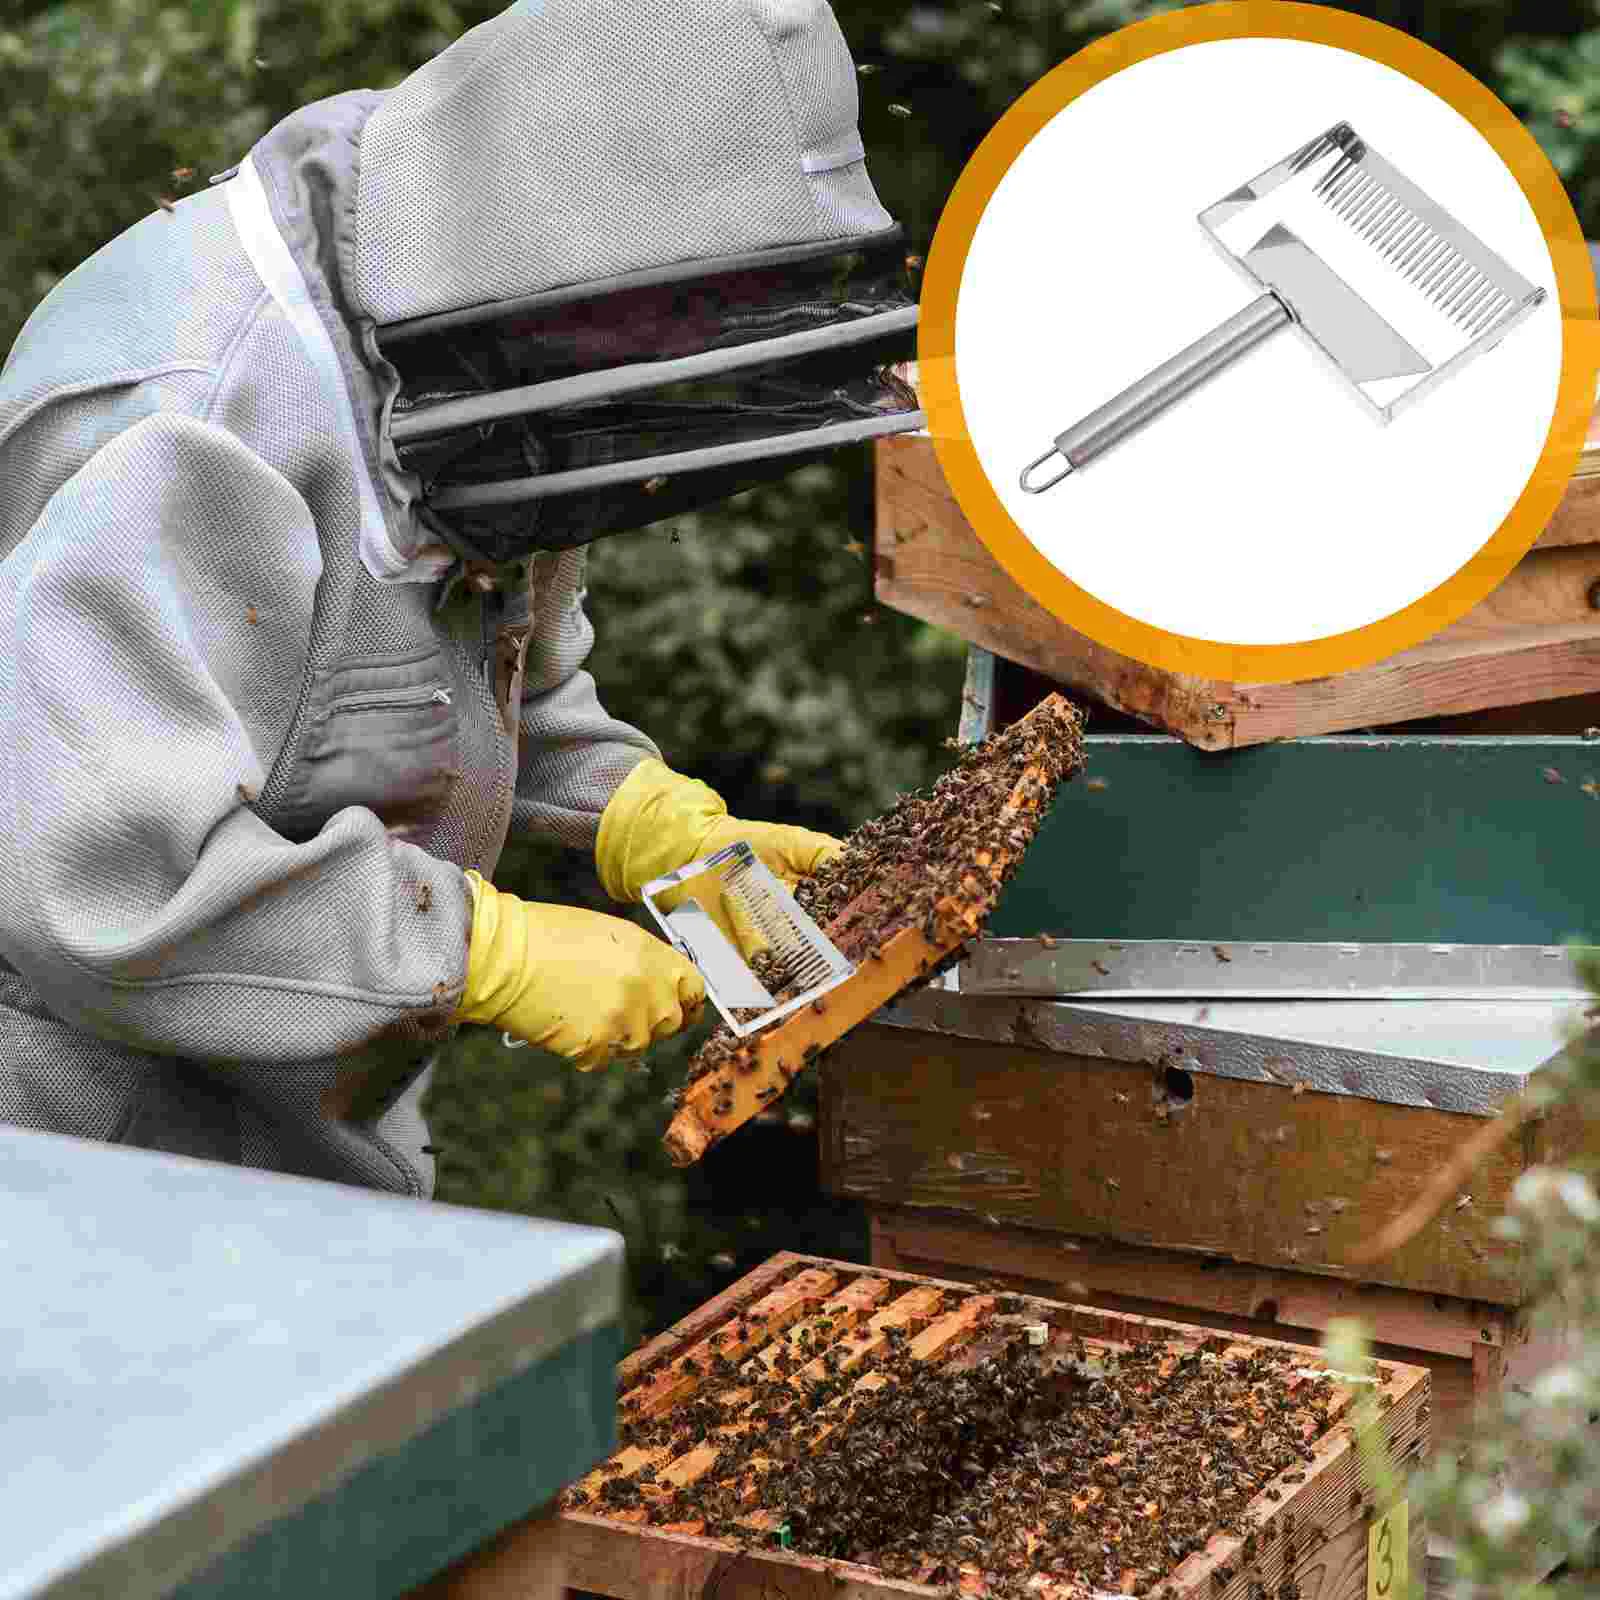 

Honey Spatula Home Beekeeping Scraper Suit Durable Collector Tools Outdoor Extractor Equipment Practical